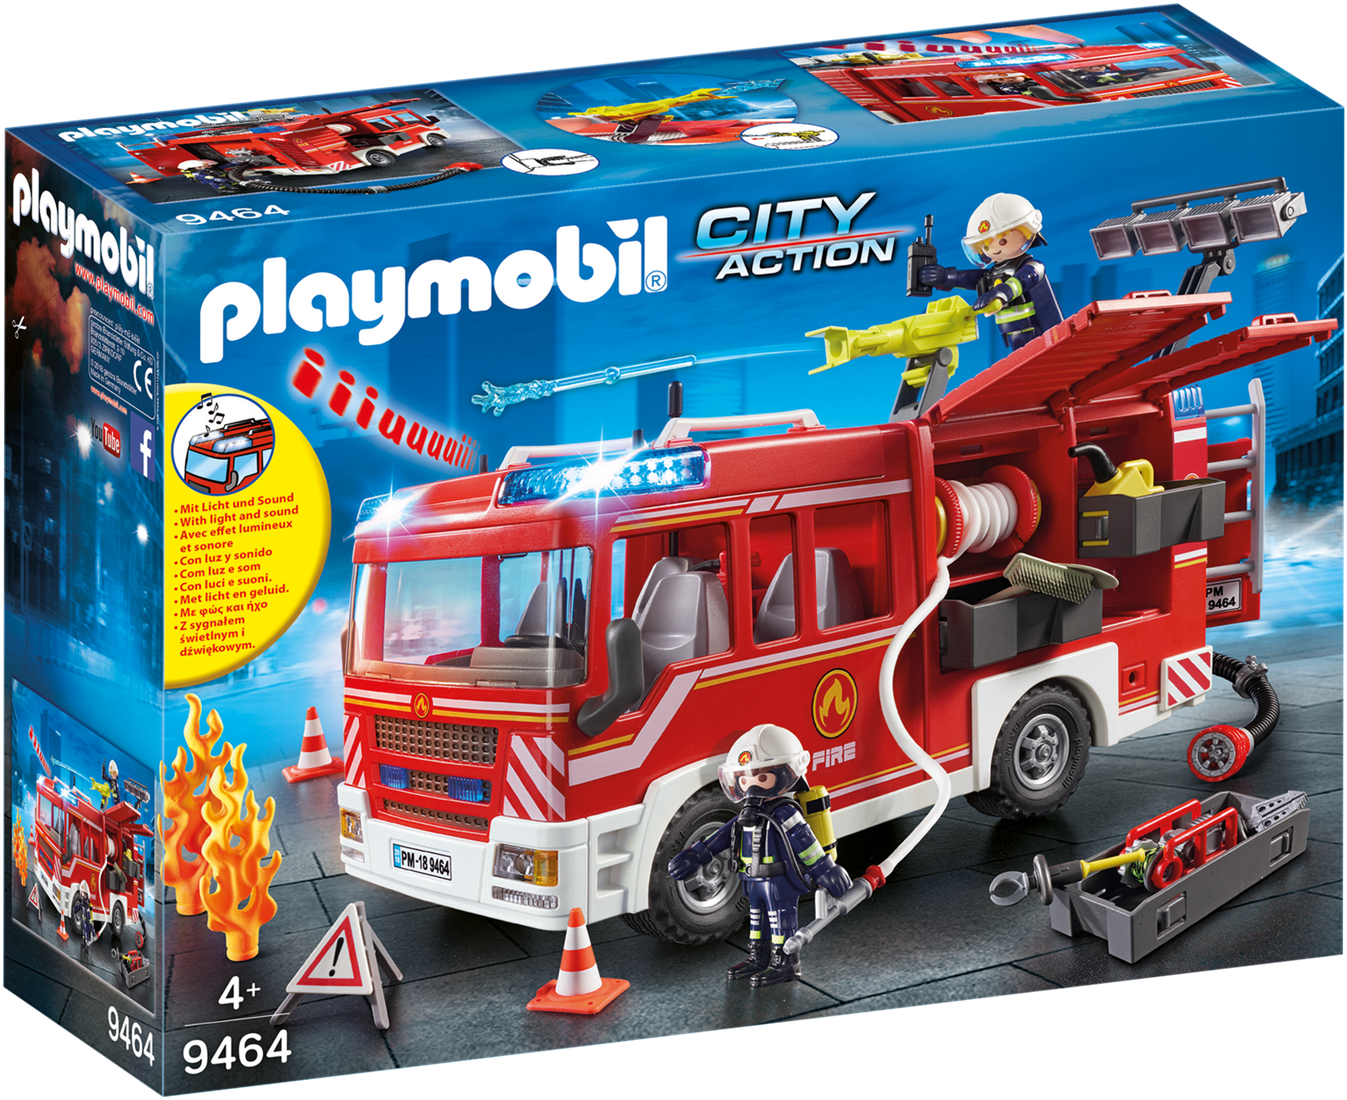 Playmobil City Action - Brandweer pompwagen kopen?